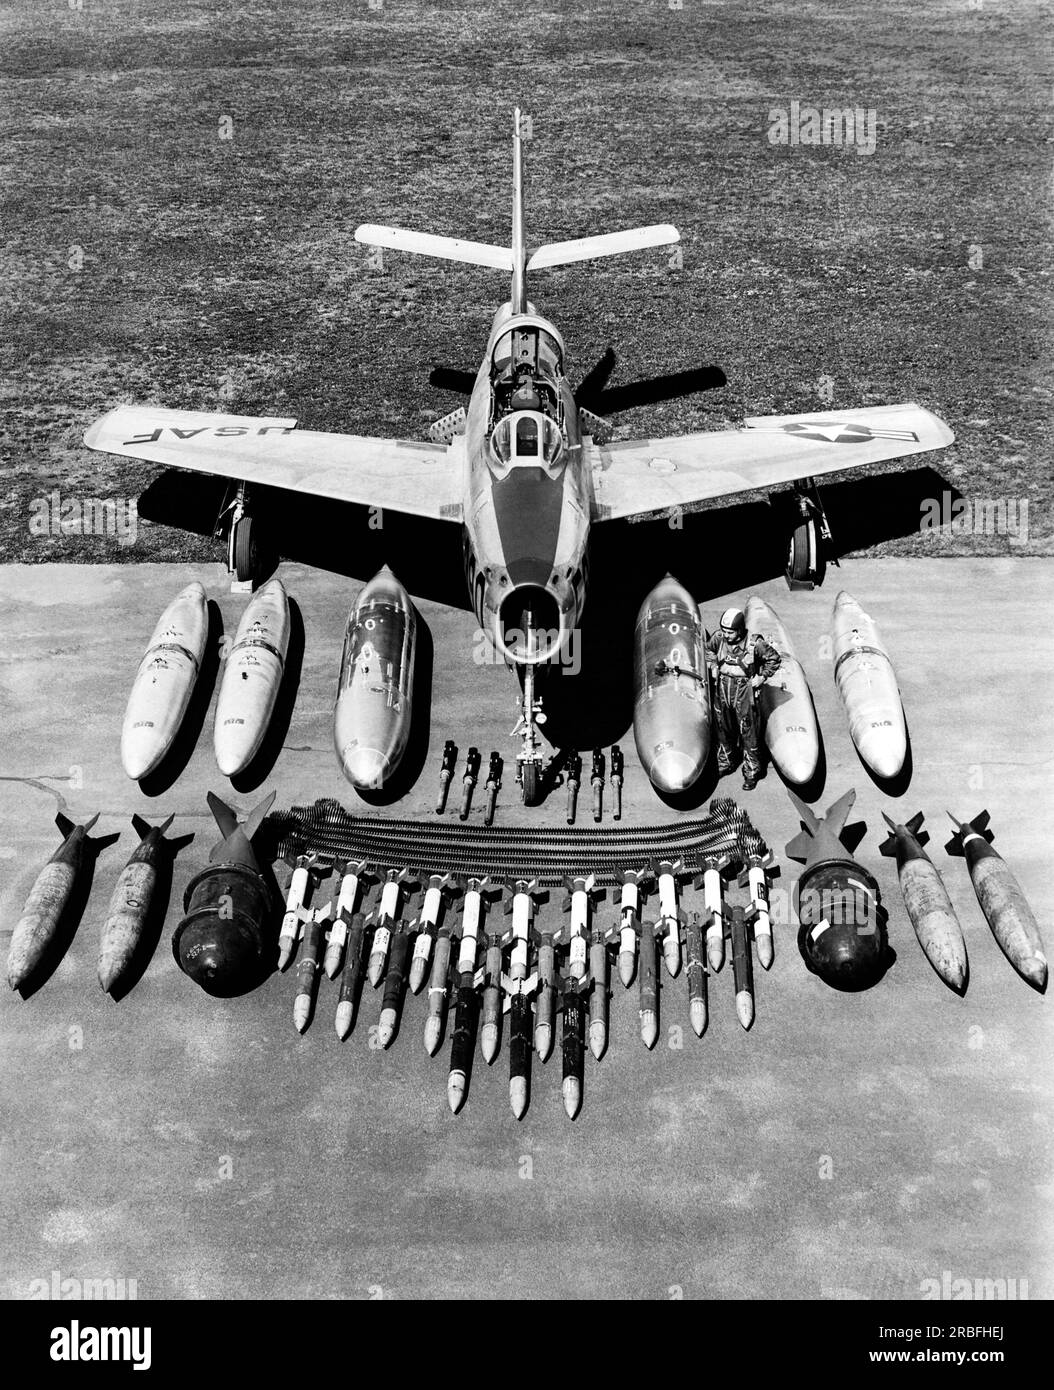 Stati Uniti: 1950 Un Republic F-84F Thunderstreak caccia-bombardiere con i suoi armamenti davanti a terra e serbatoi di carburante dietro di loro. Sono incluse sei mitragliatrici calibro .50 con cinture di munizioni, e in prima fila, l-r: Due bombe da 1.000 libbre, una bomba da 2.000 libbre, ventiquattro razzi aerei da 5 pollici, una bomba da 2.000 libbre e due bombe da 1.000 libbre. Nella fila posteriore ci sono i serbatoi del carburante. Può anche trasportare la bomba atomica. Foto Stock